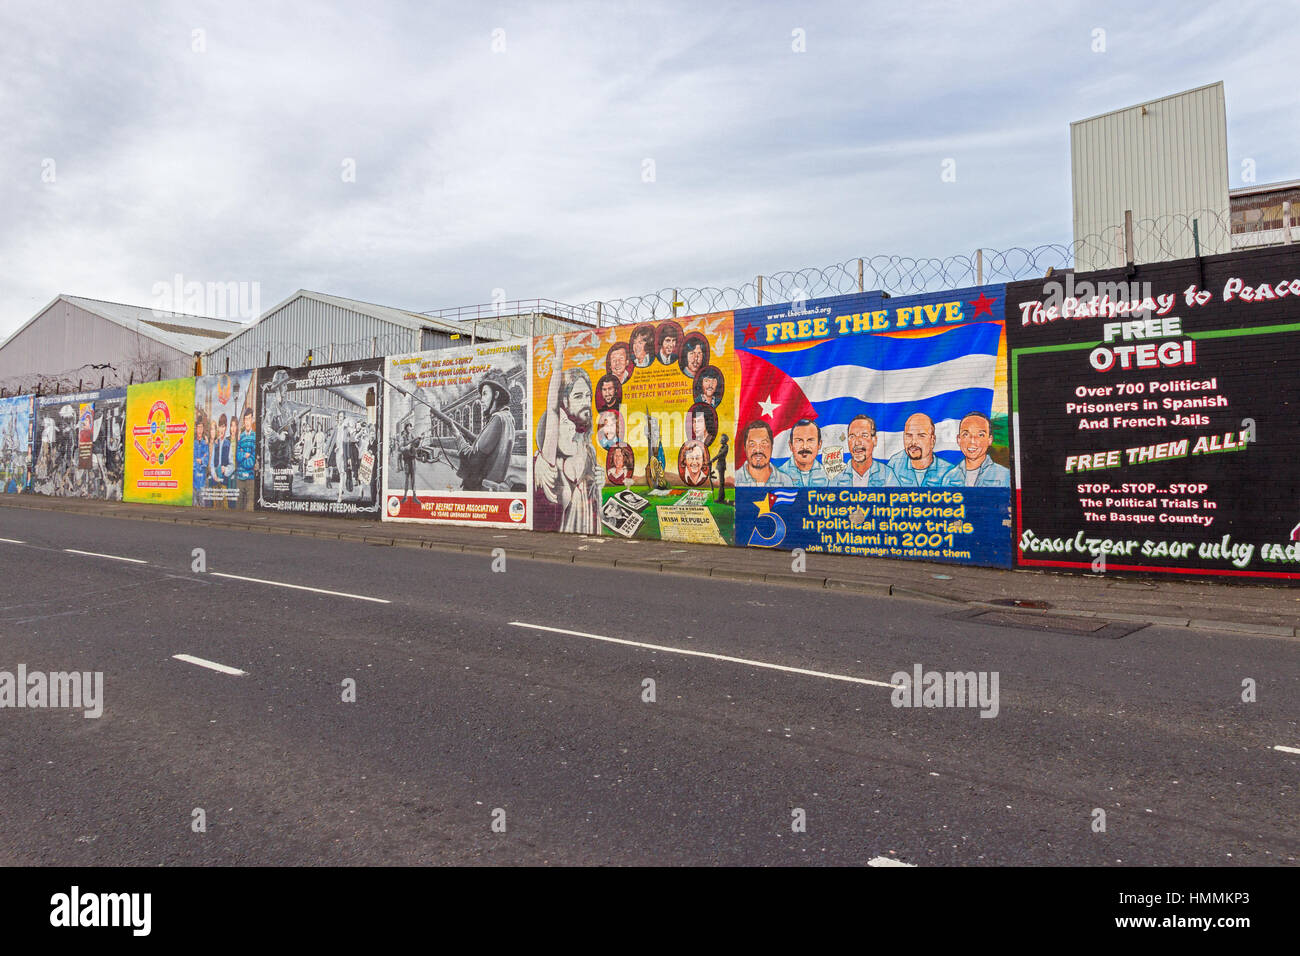 BELFAST, EN IRLANDE DU NORD - Feb 9, 2014 : fresque politique à Belfast, en Irlande du Nord. Falls Road est célèbre pour ses peintures murales politiques. Banque D'Images